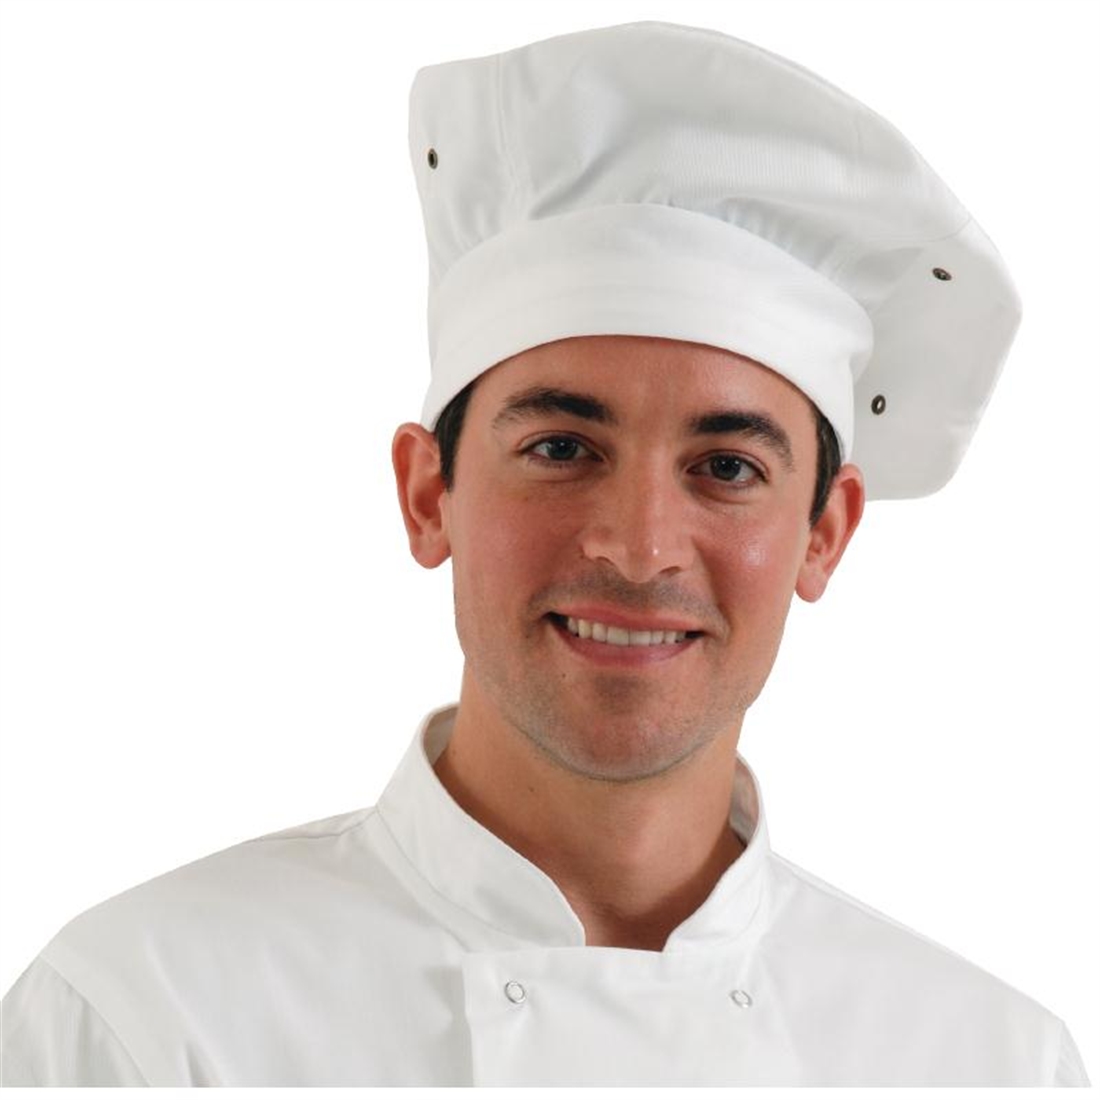 Chef Works Toque Chefs Hat White